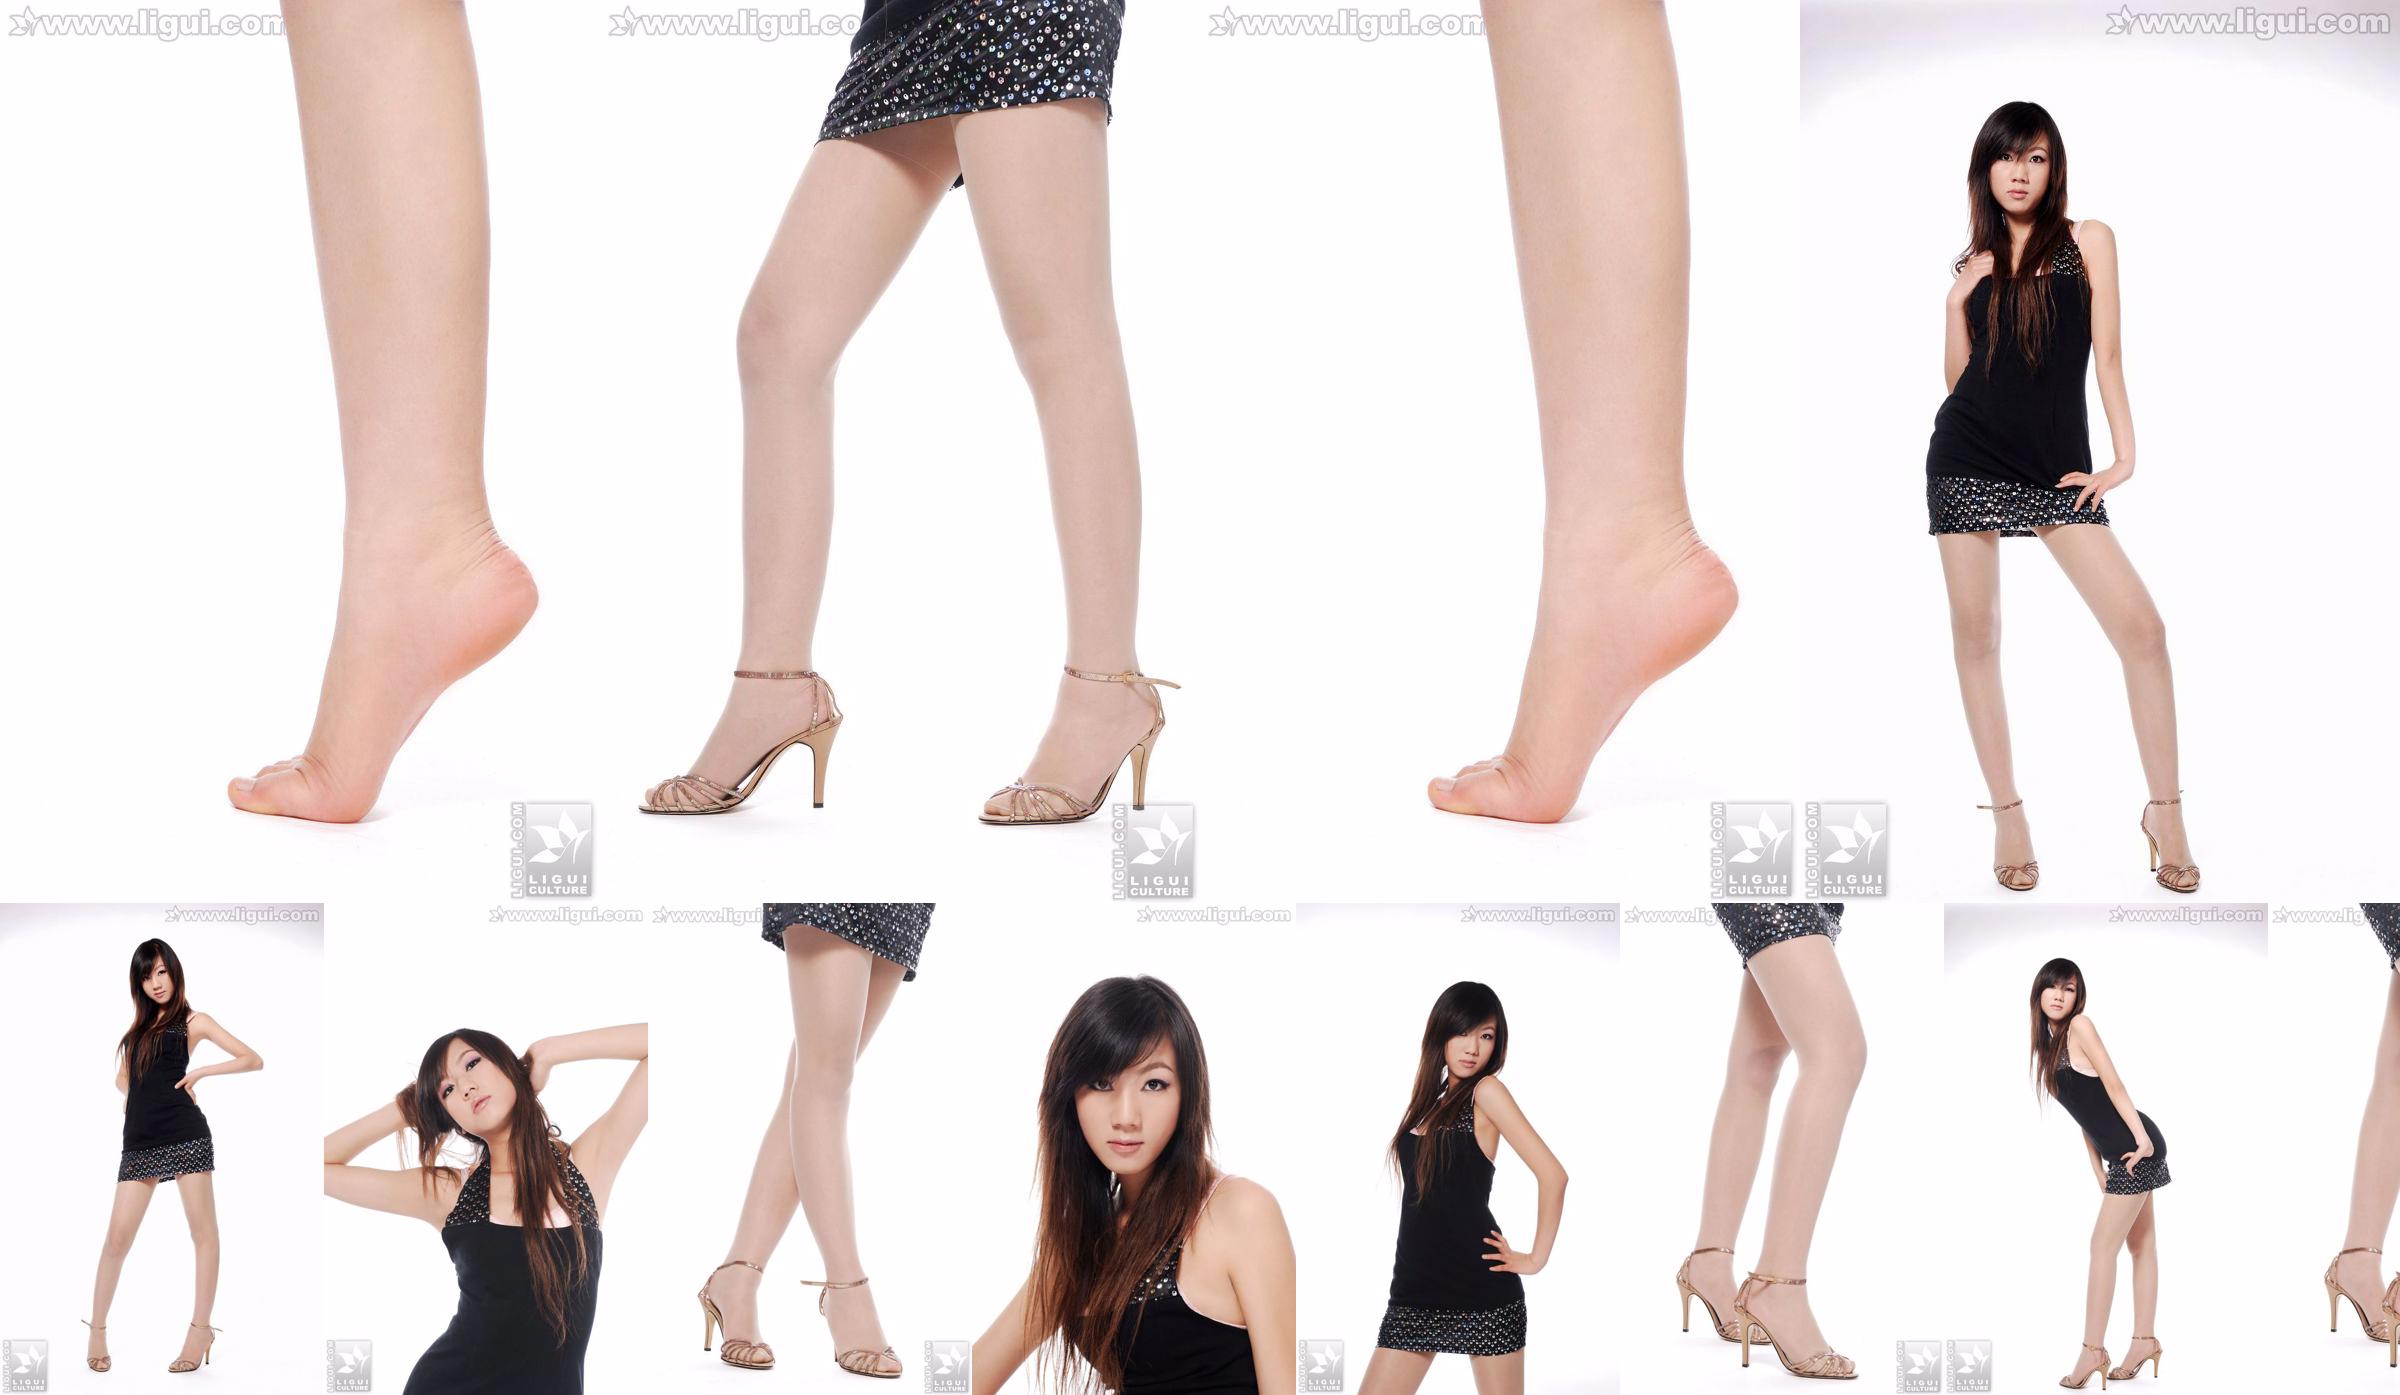 Người mẫu Sheng Chao "Giày cao gót ngọc xinh show mới" [Sheng LiGui] Ảnh chụp chân dài ngọc nữ xinh đẹp No.5c3933 Trang 1